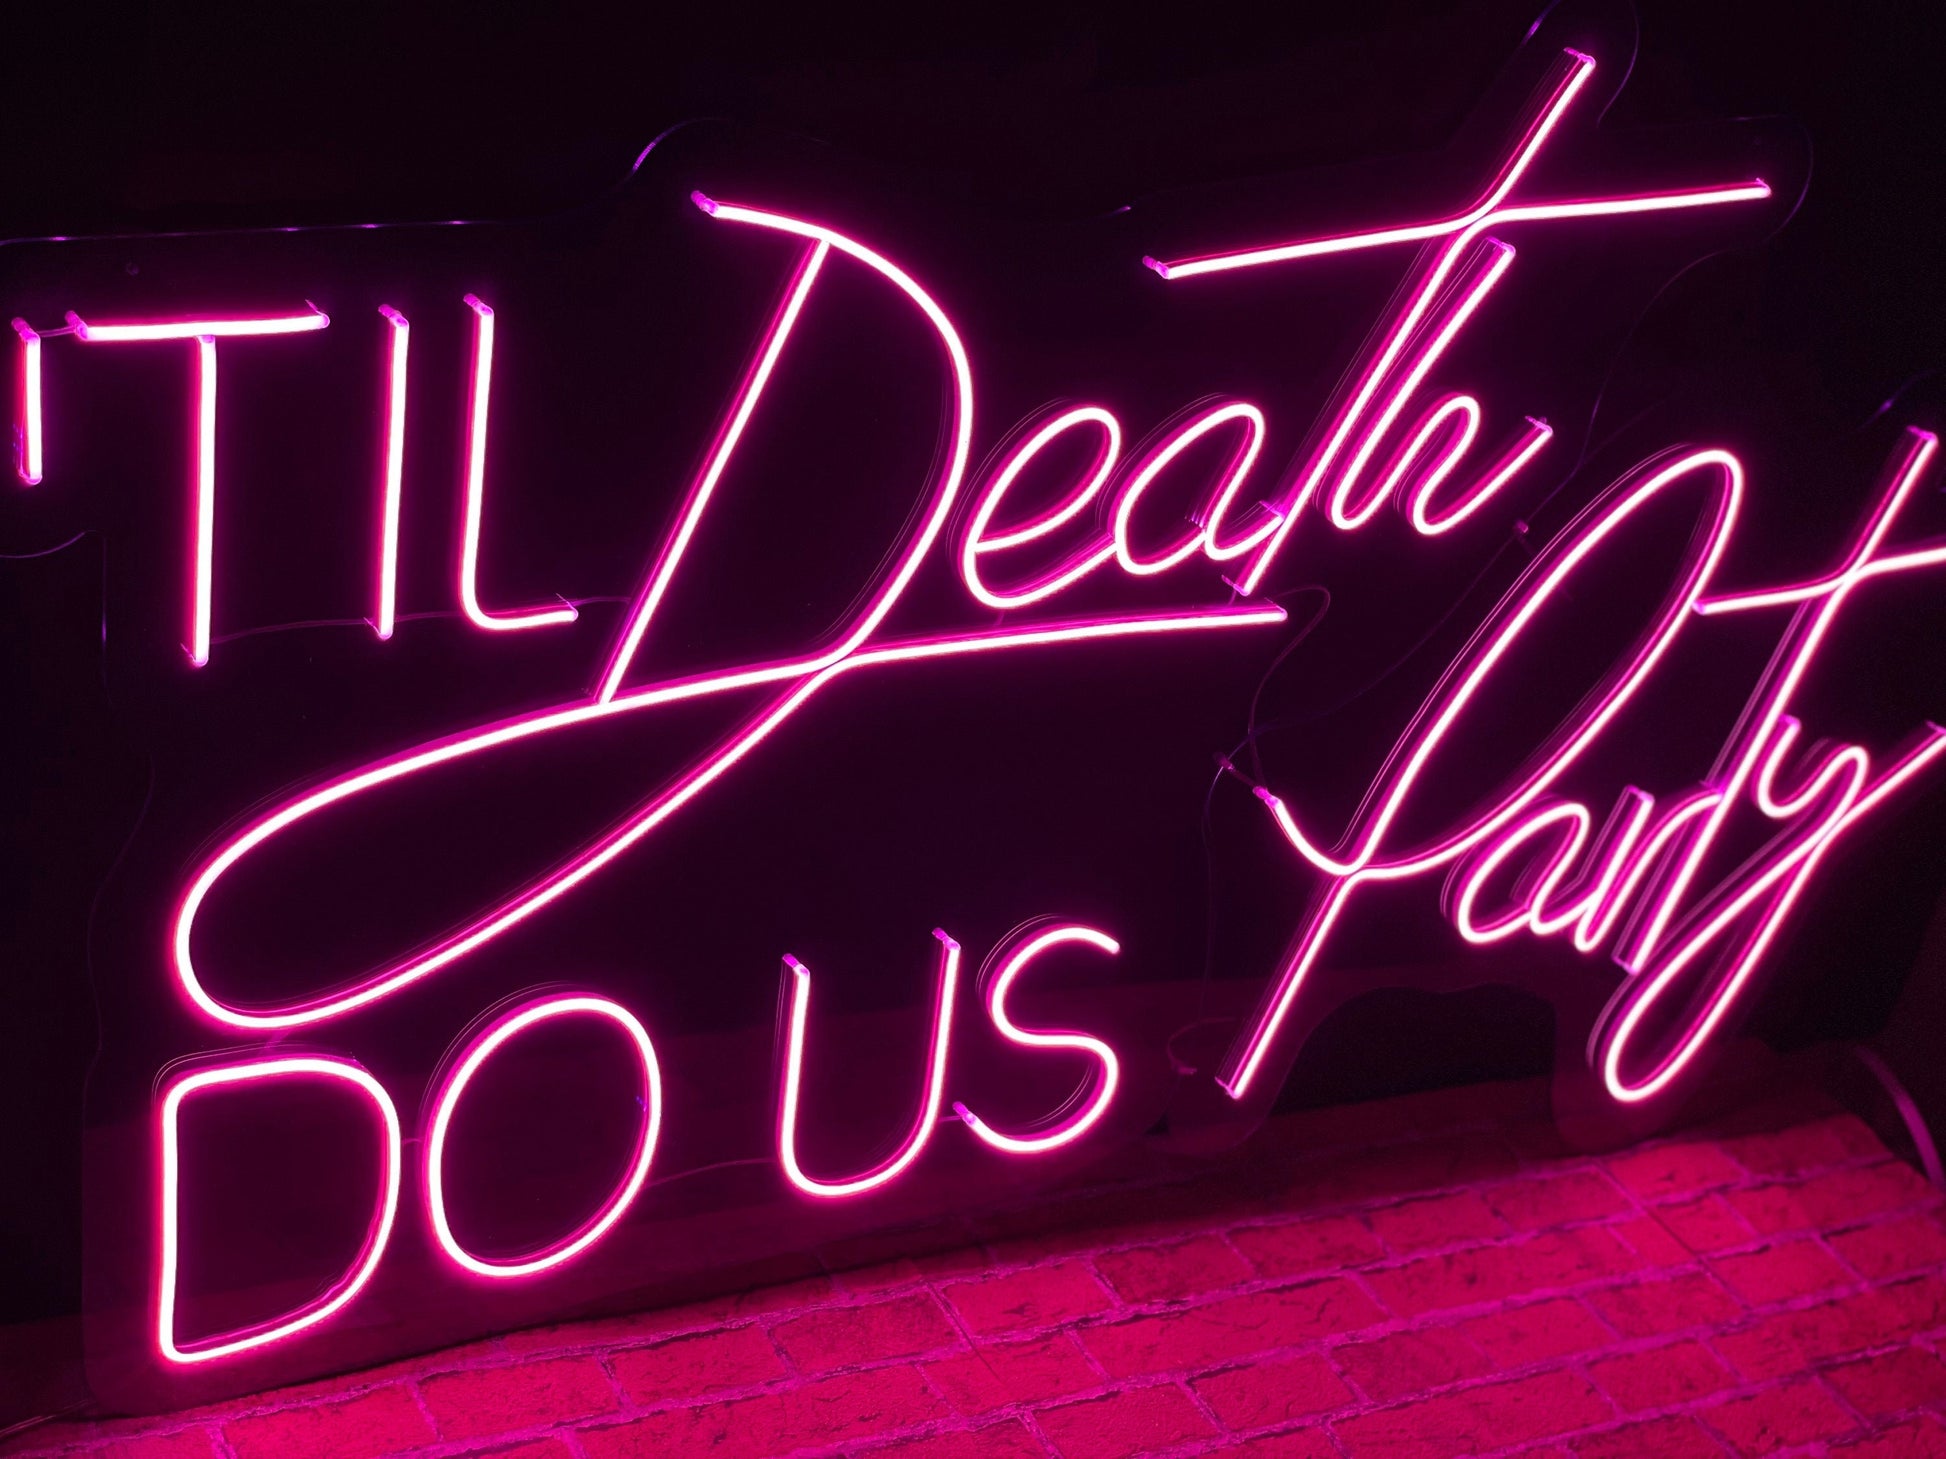 Til Death Do Us Party - LED Neon Sign,Wedding neon sign,Led neon sign wall decor,Neon sign,Neon Sign Wedding, Custom Wedding Neon Sign,